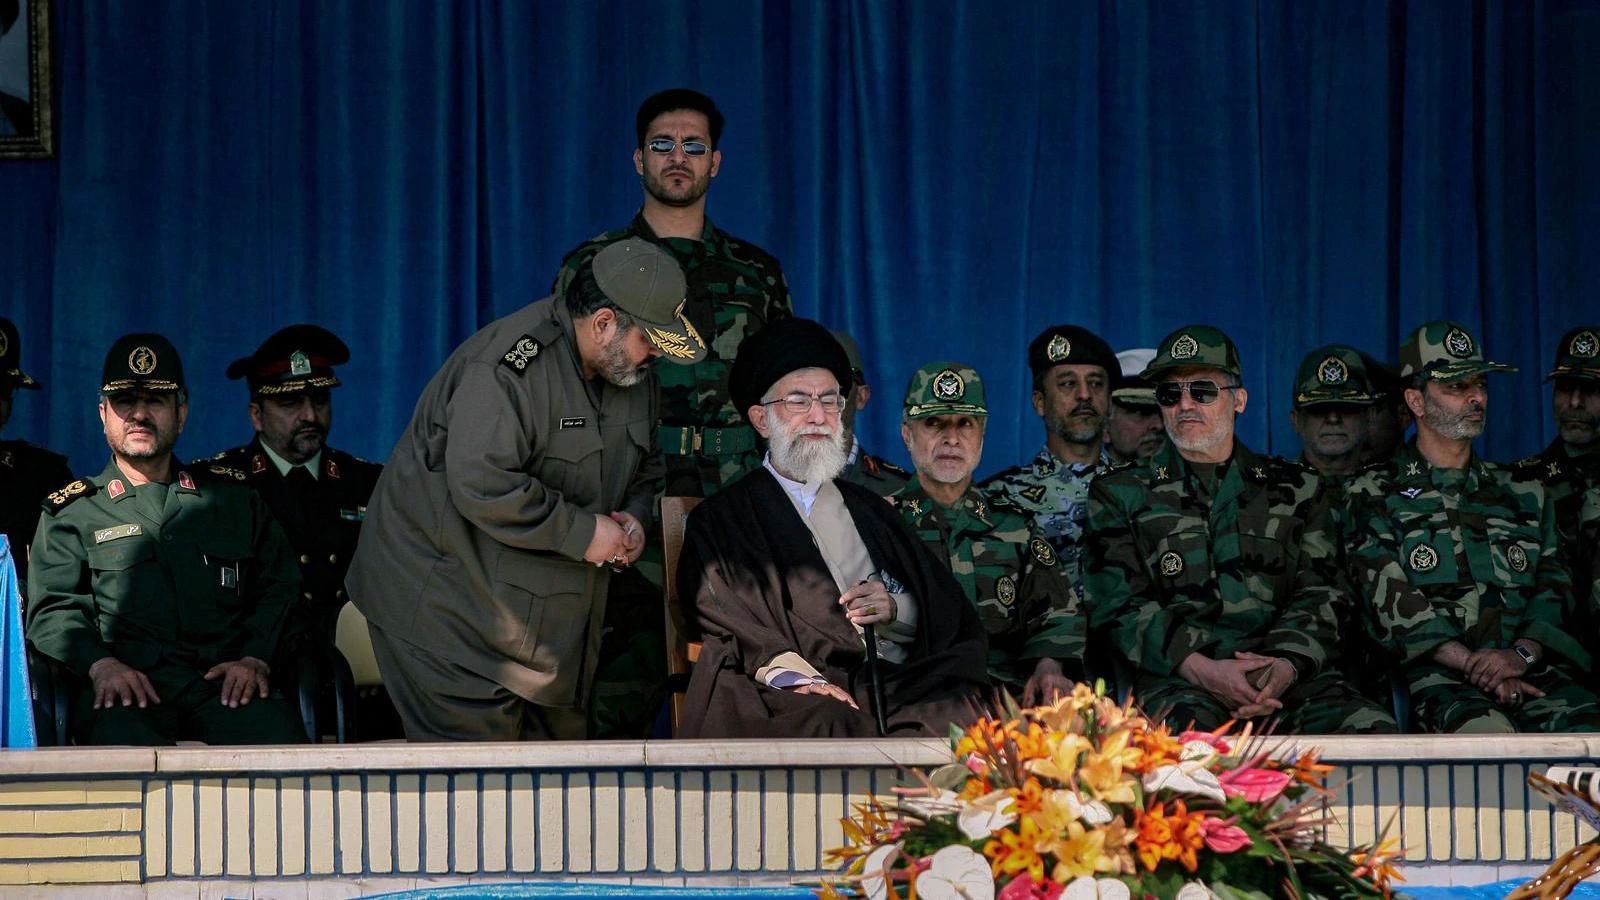 Iranski vođa Homeini